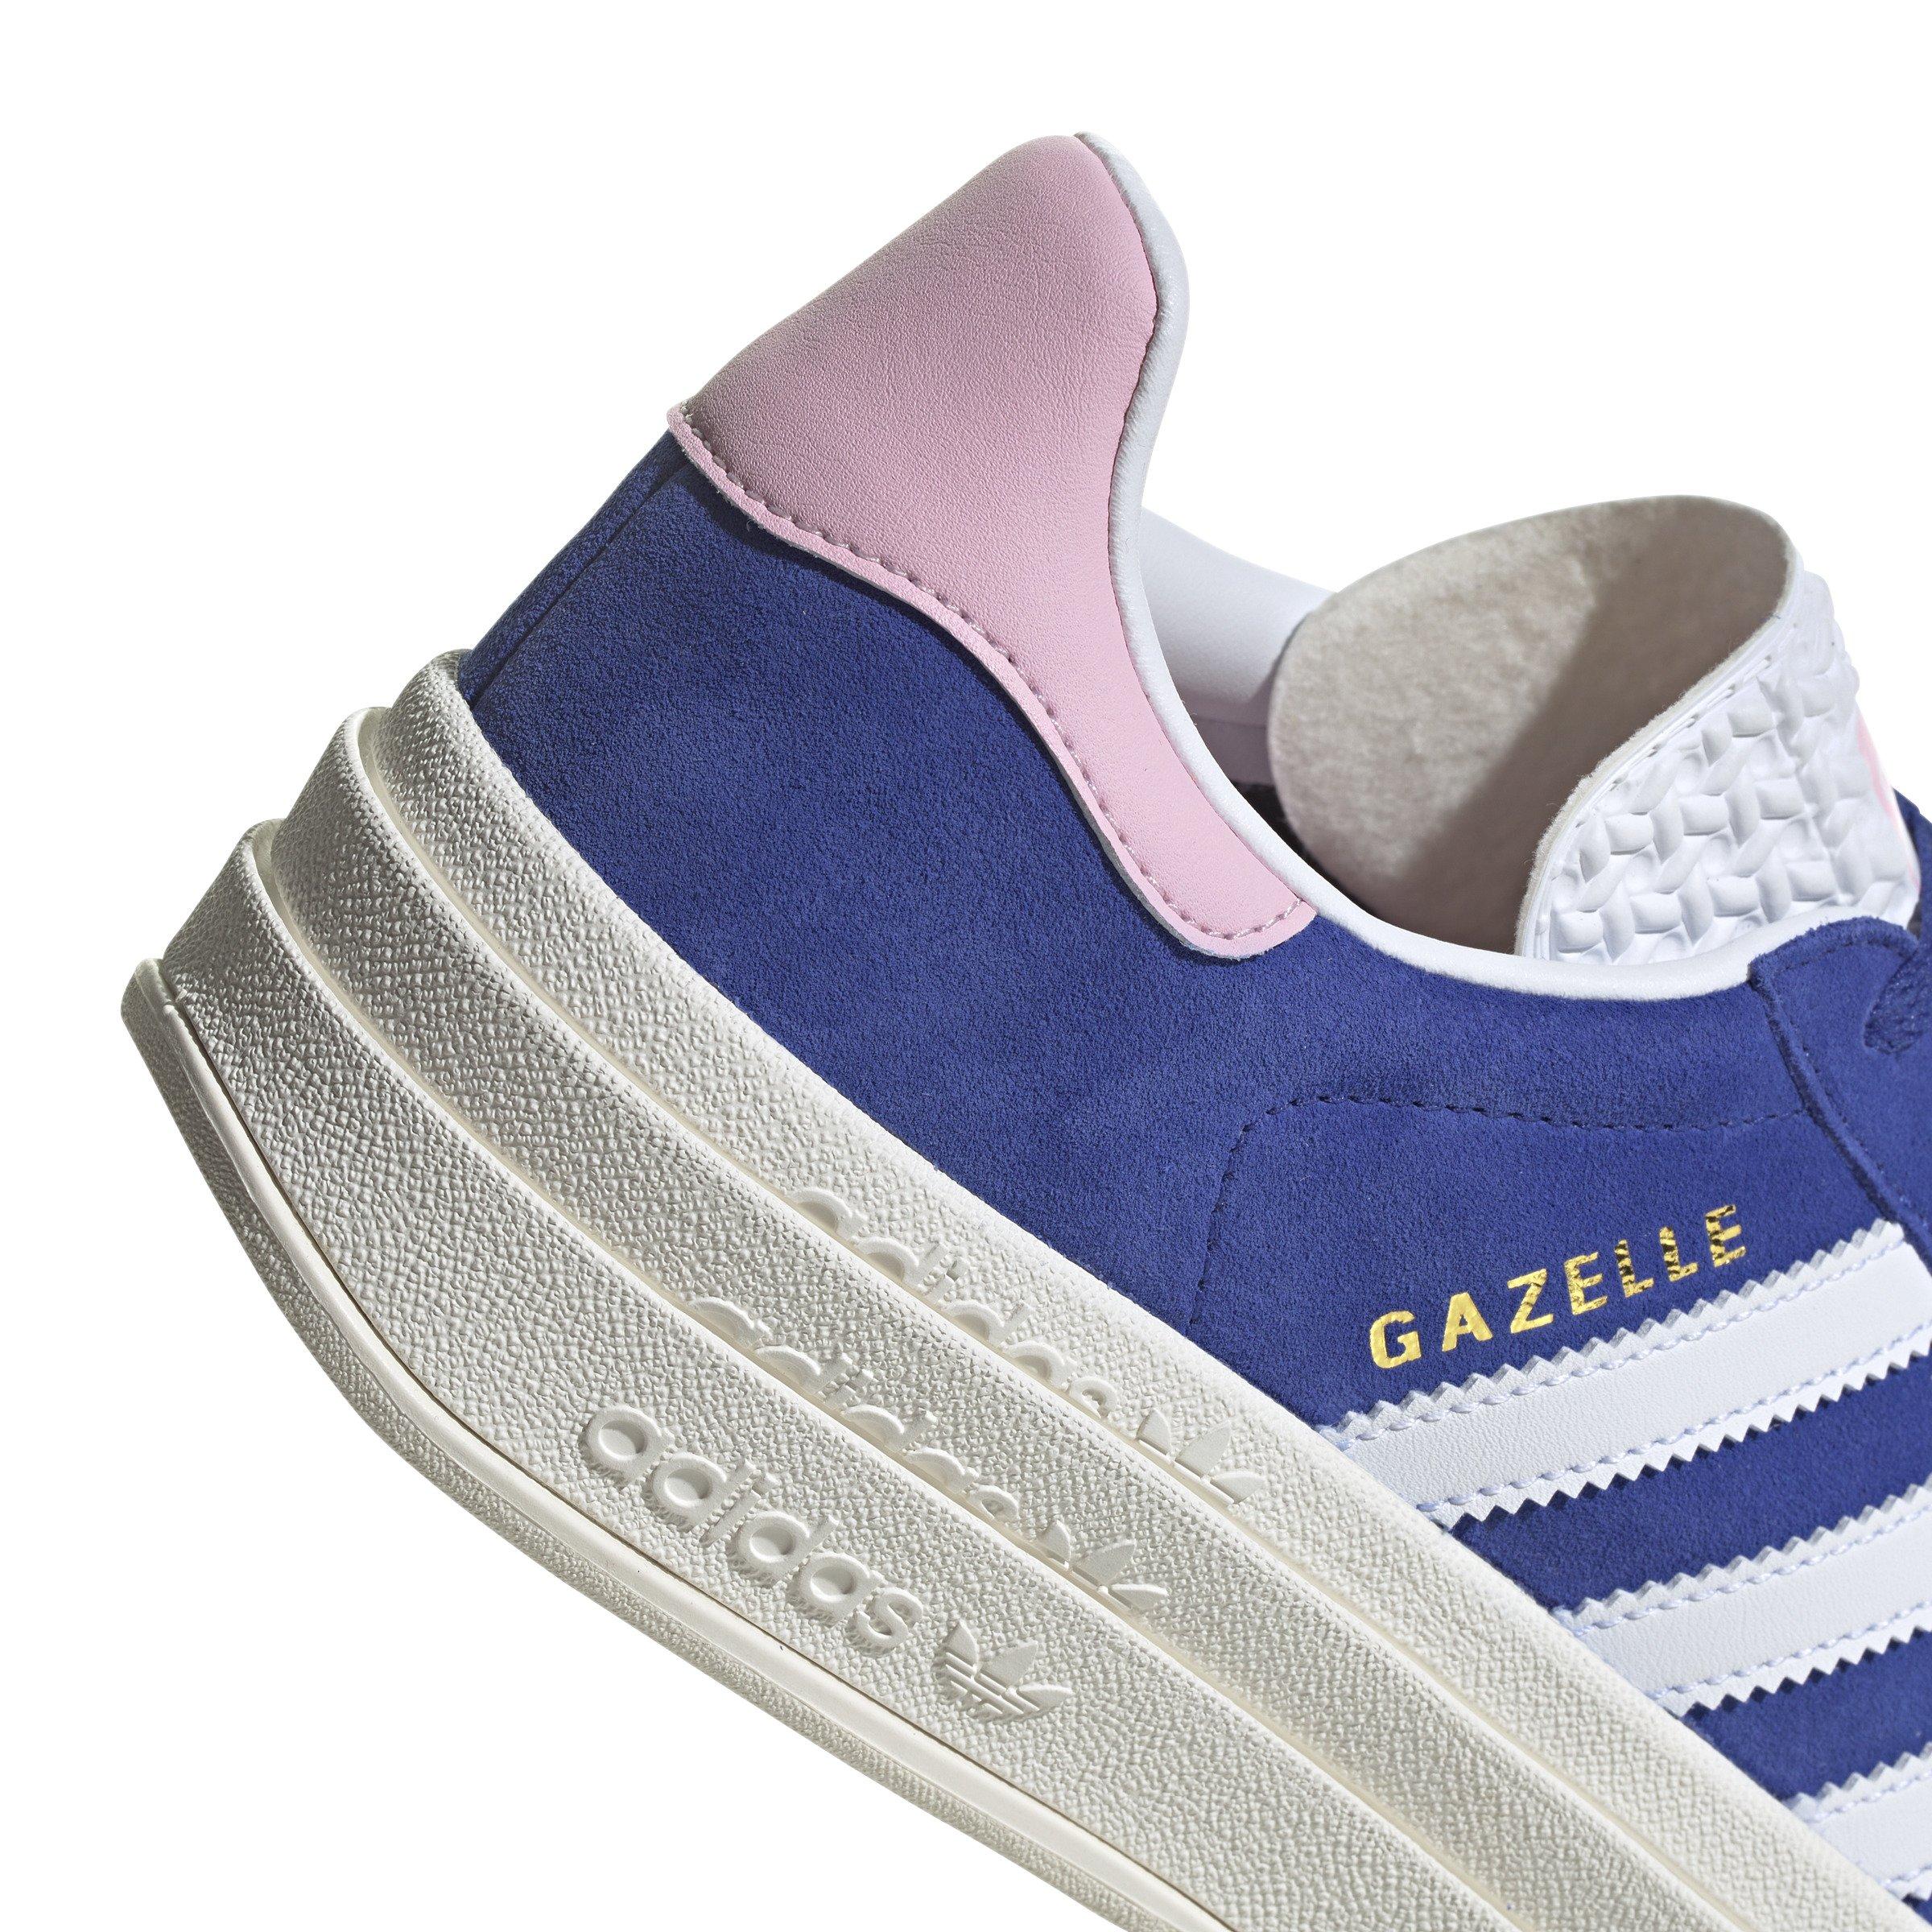 adidas Originals Gazelle Bold "True Pink/Selubl/Chalk White" - Hibbett Gear